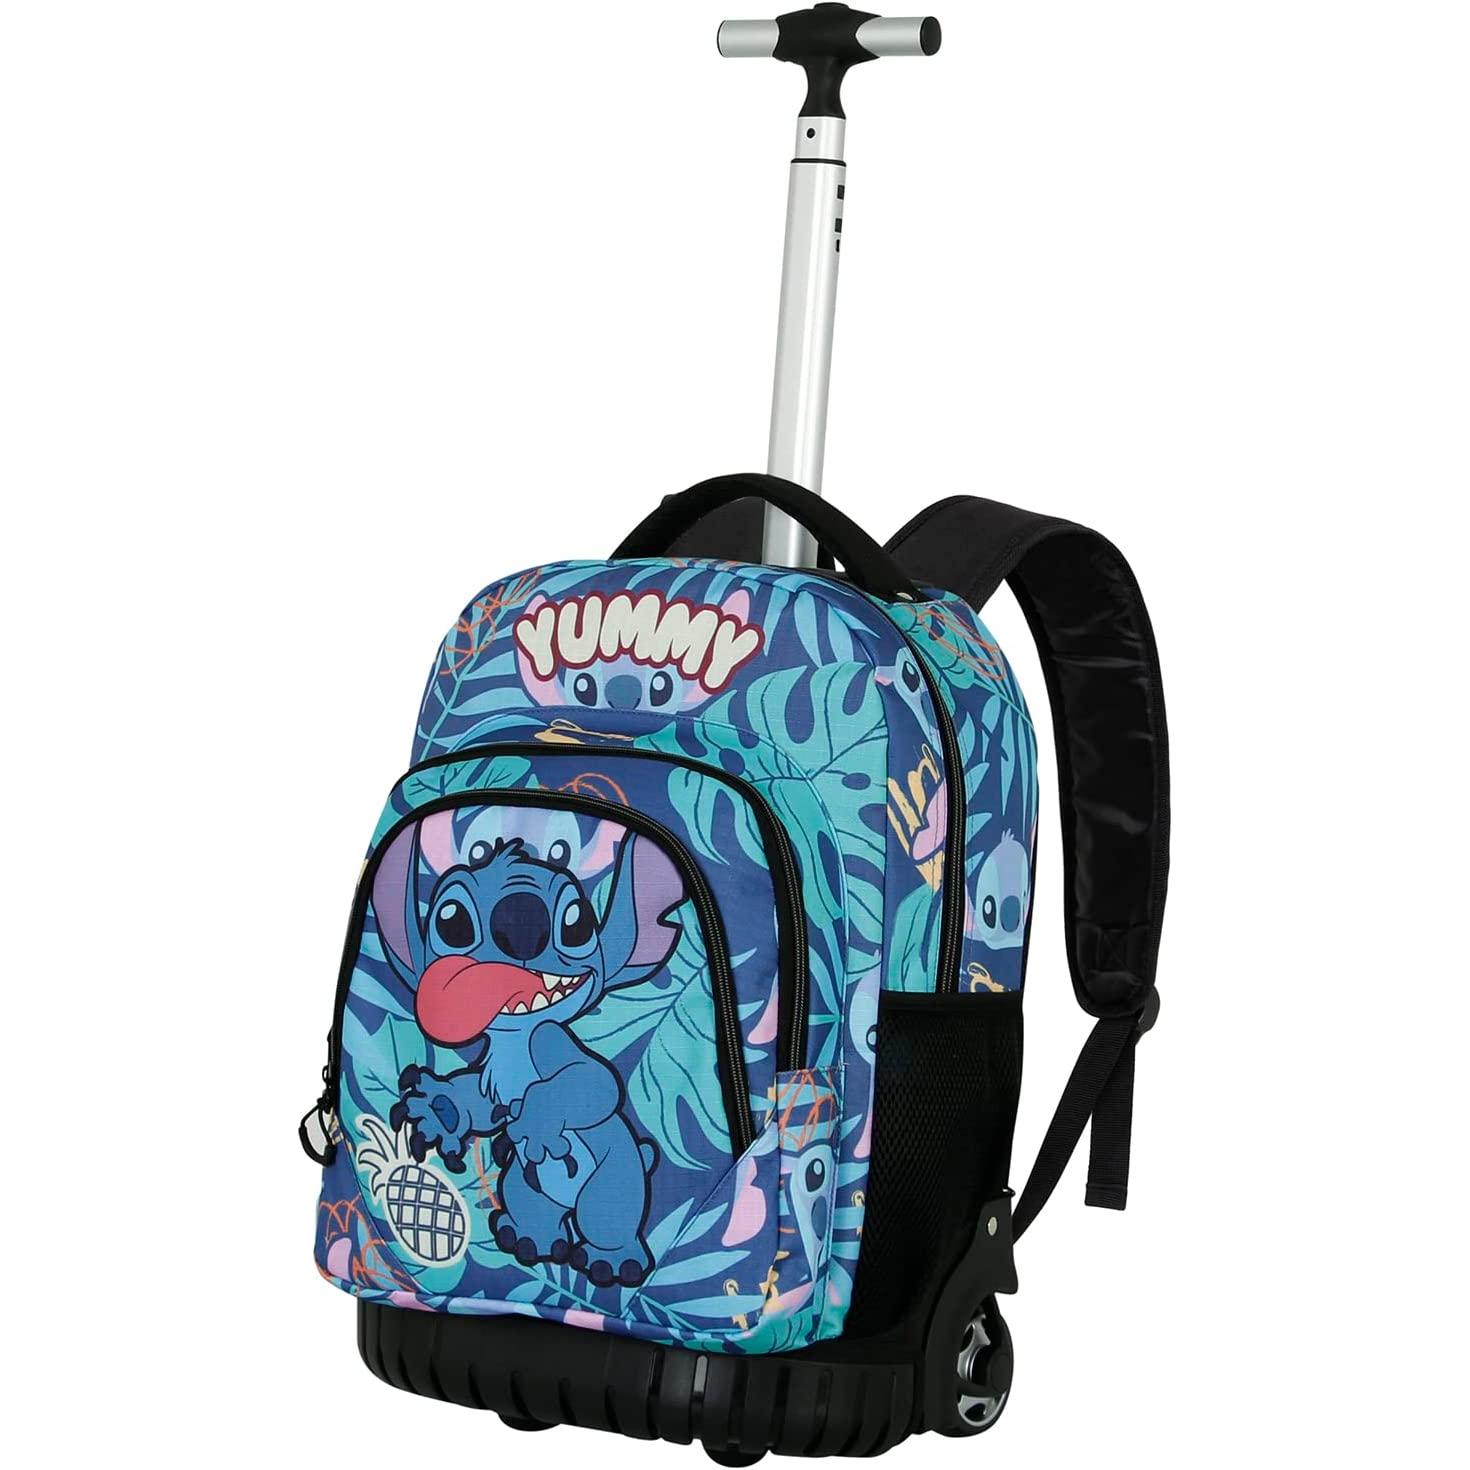 Mochila Stitch Disney 42 cm - Calidad Superior -New discount.com